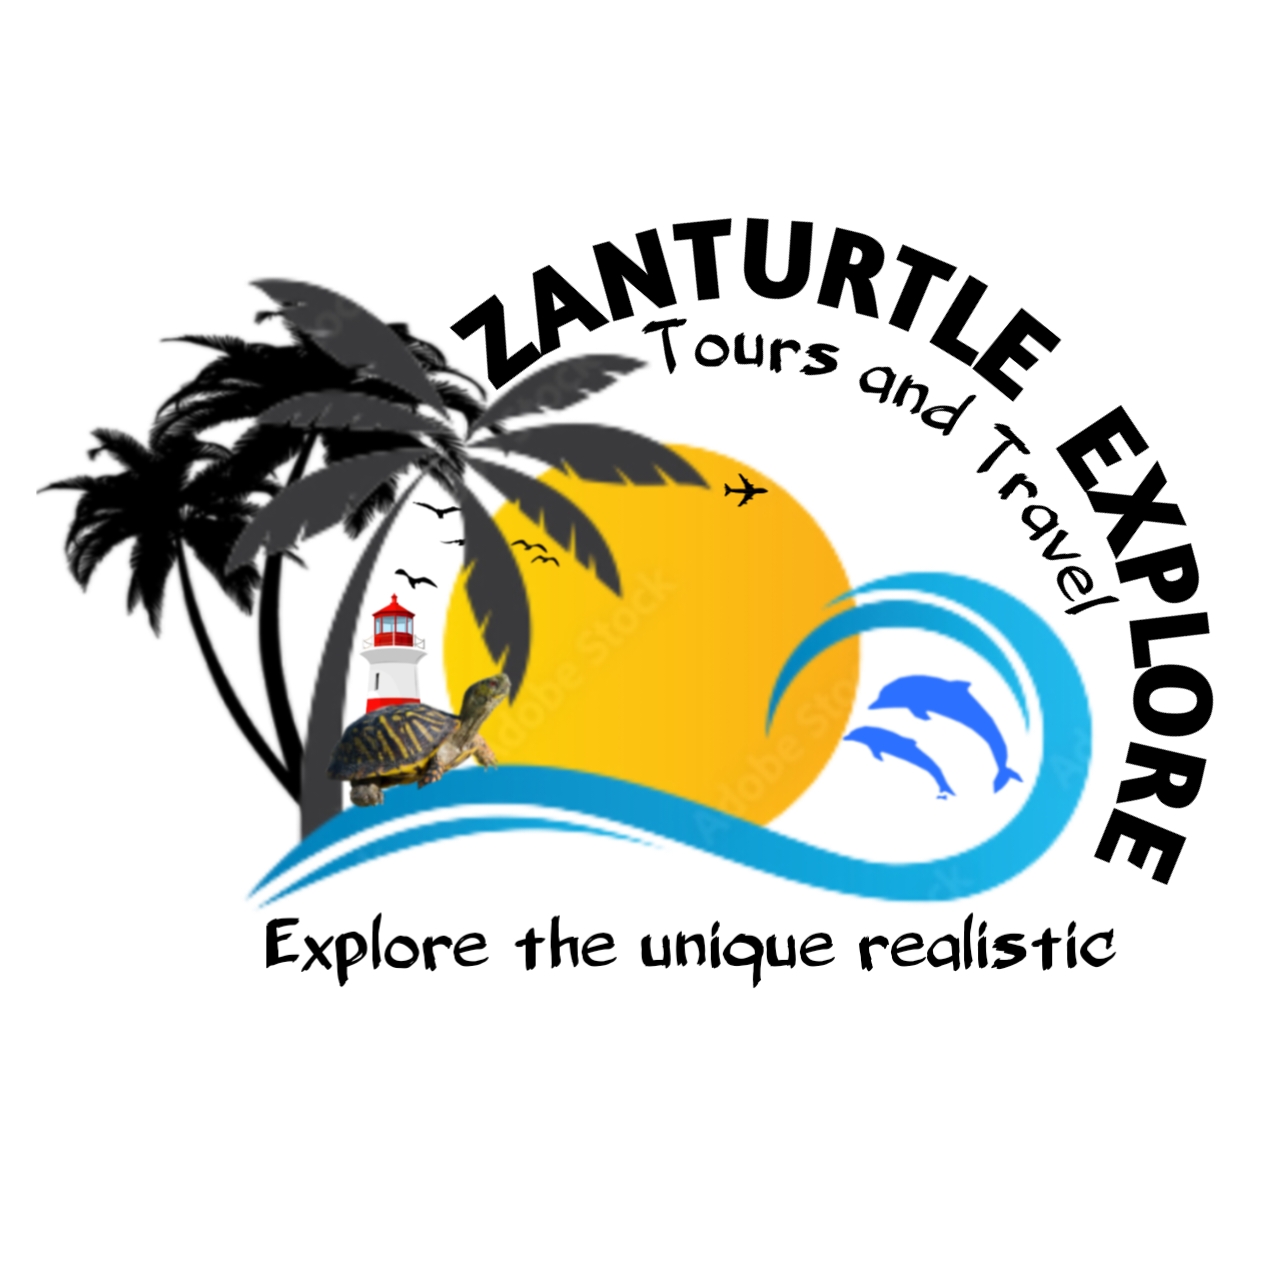 Zanturtle Explore Tour ..